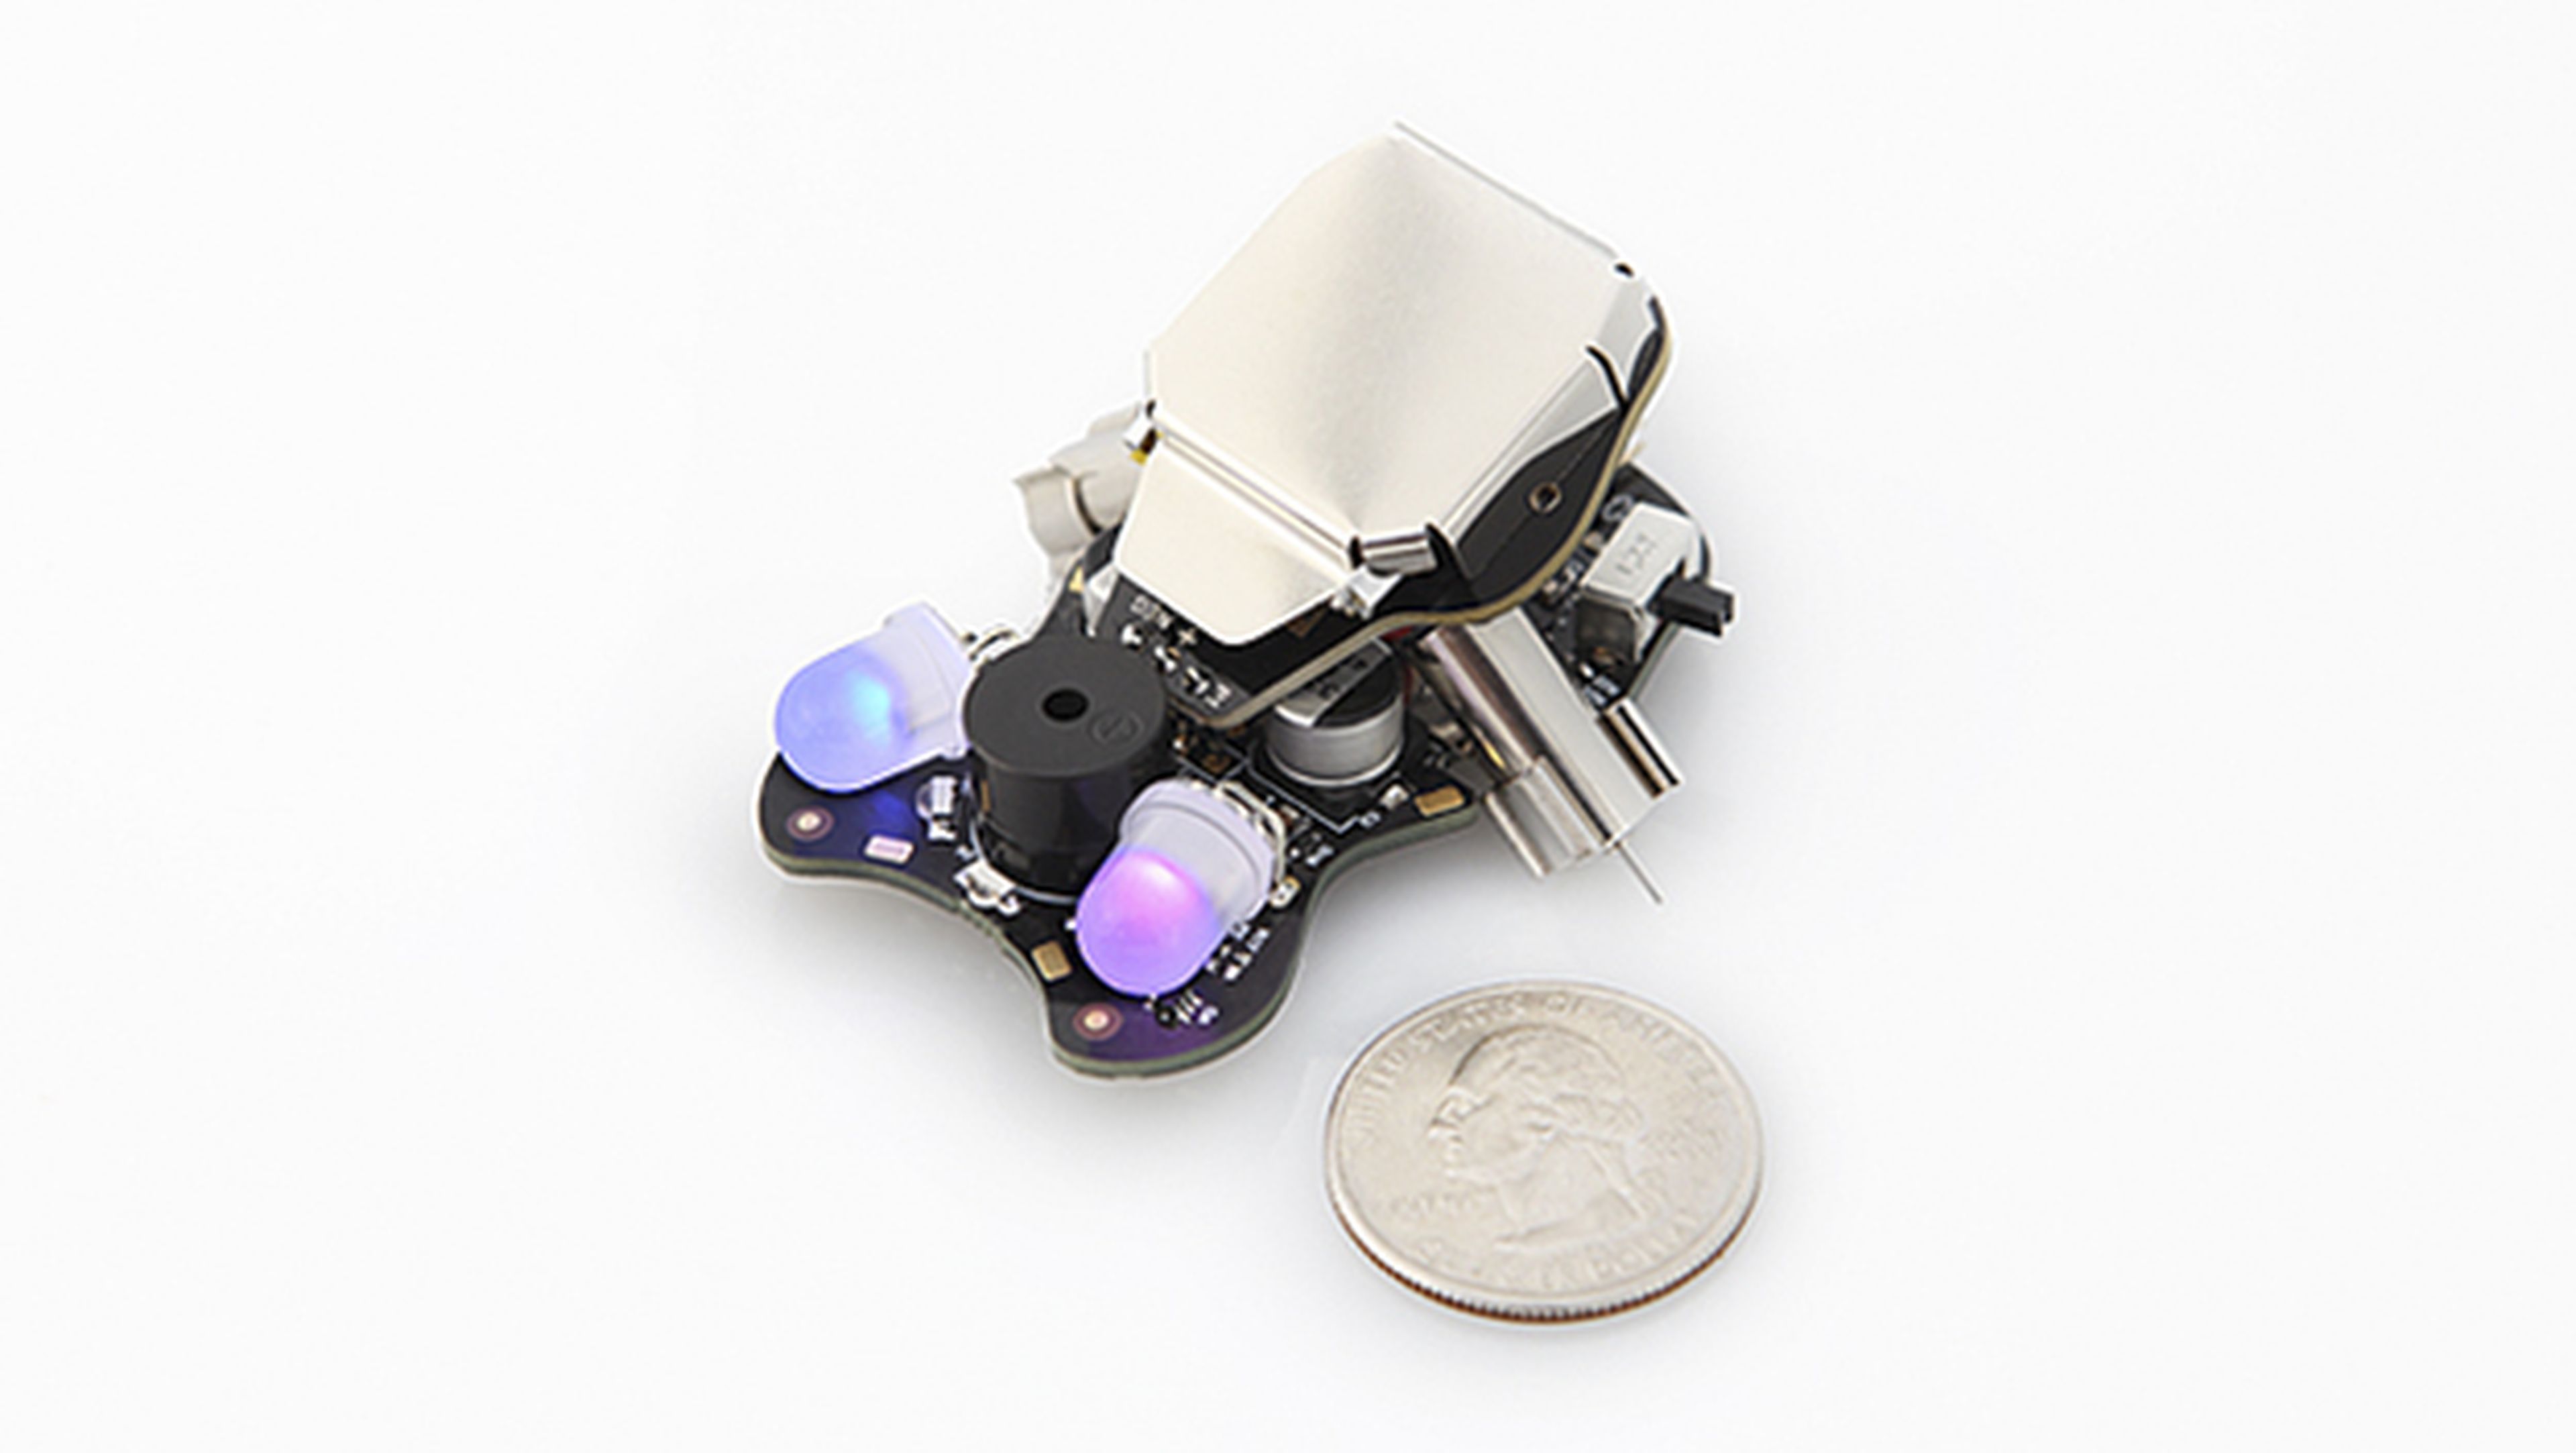 Wink, un robot low cost para aprender a programar fácilmente